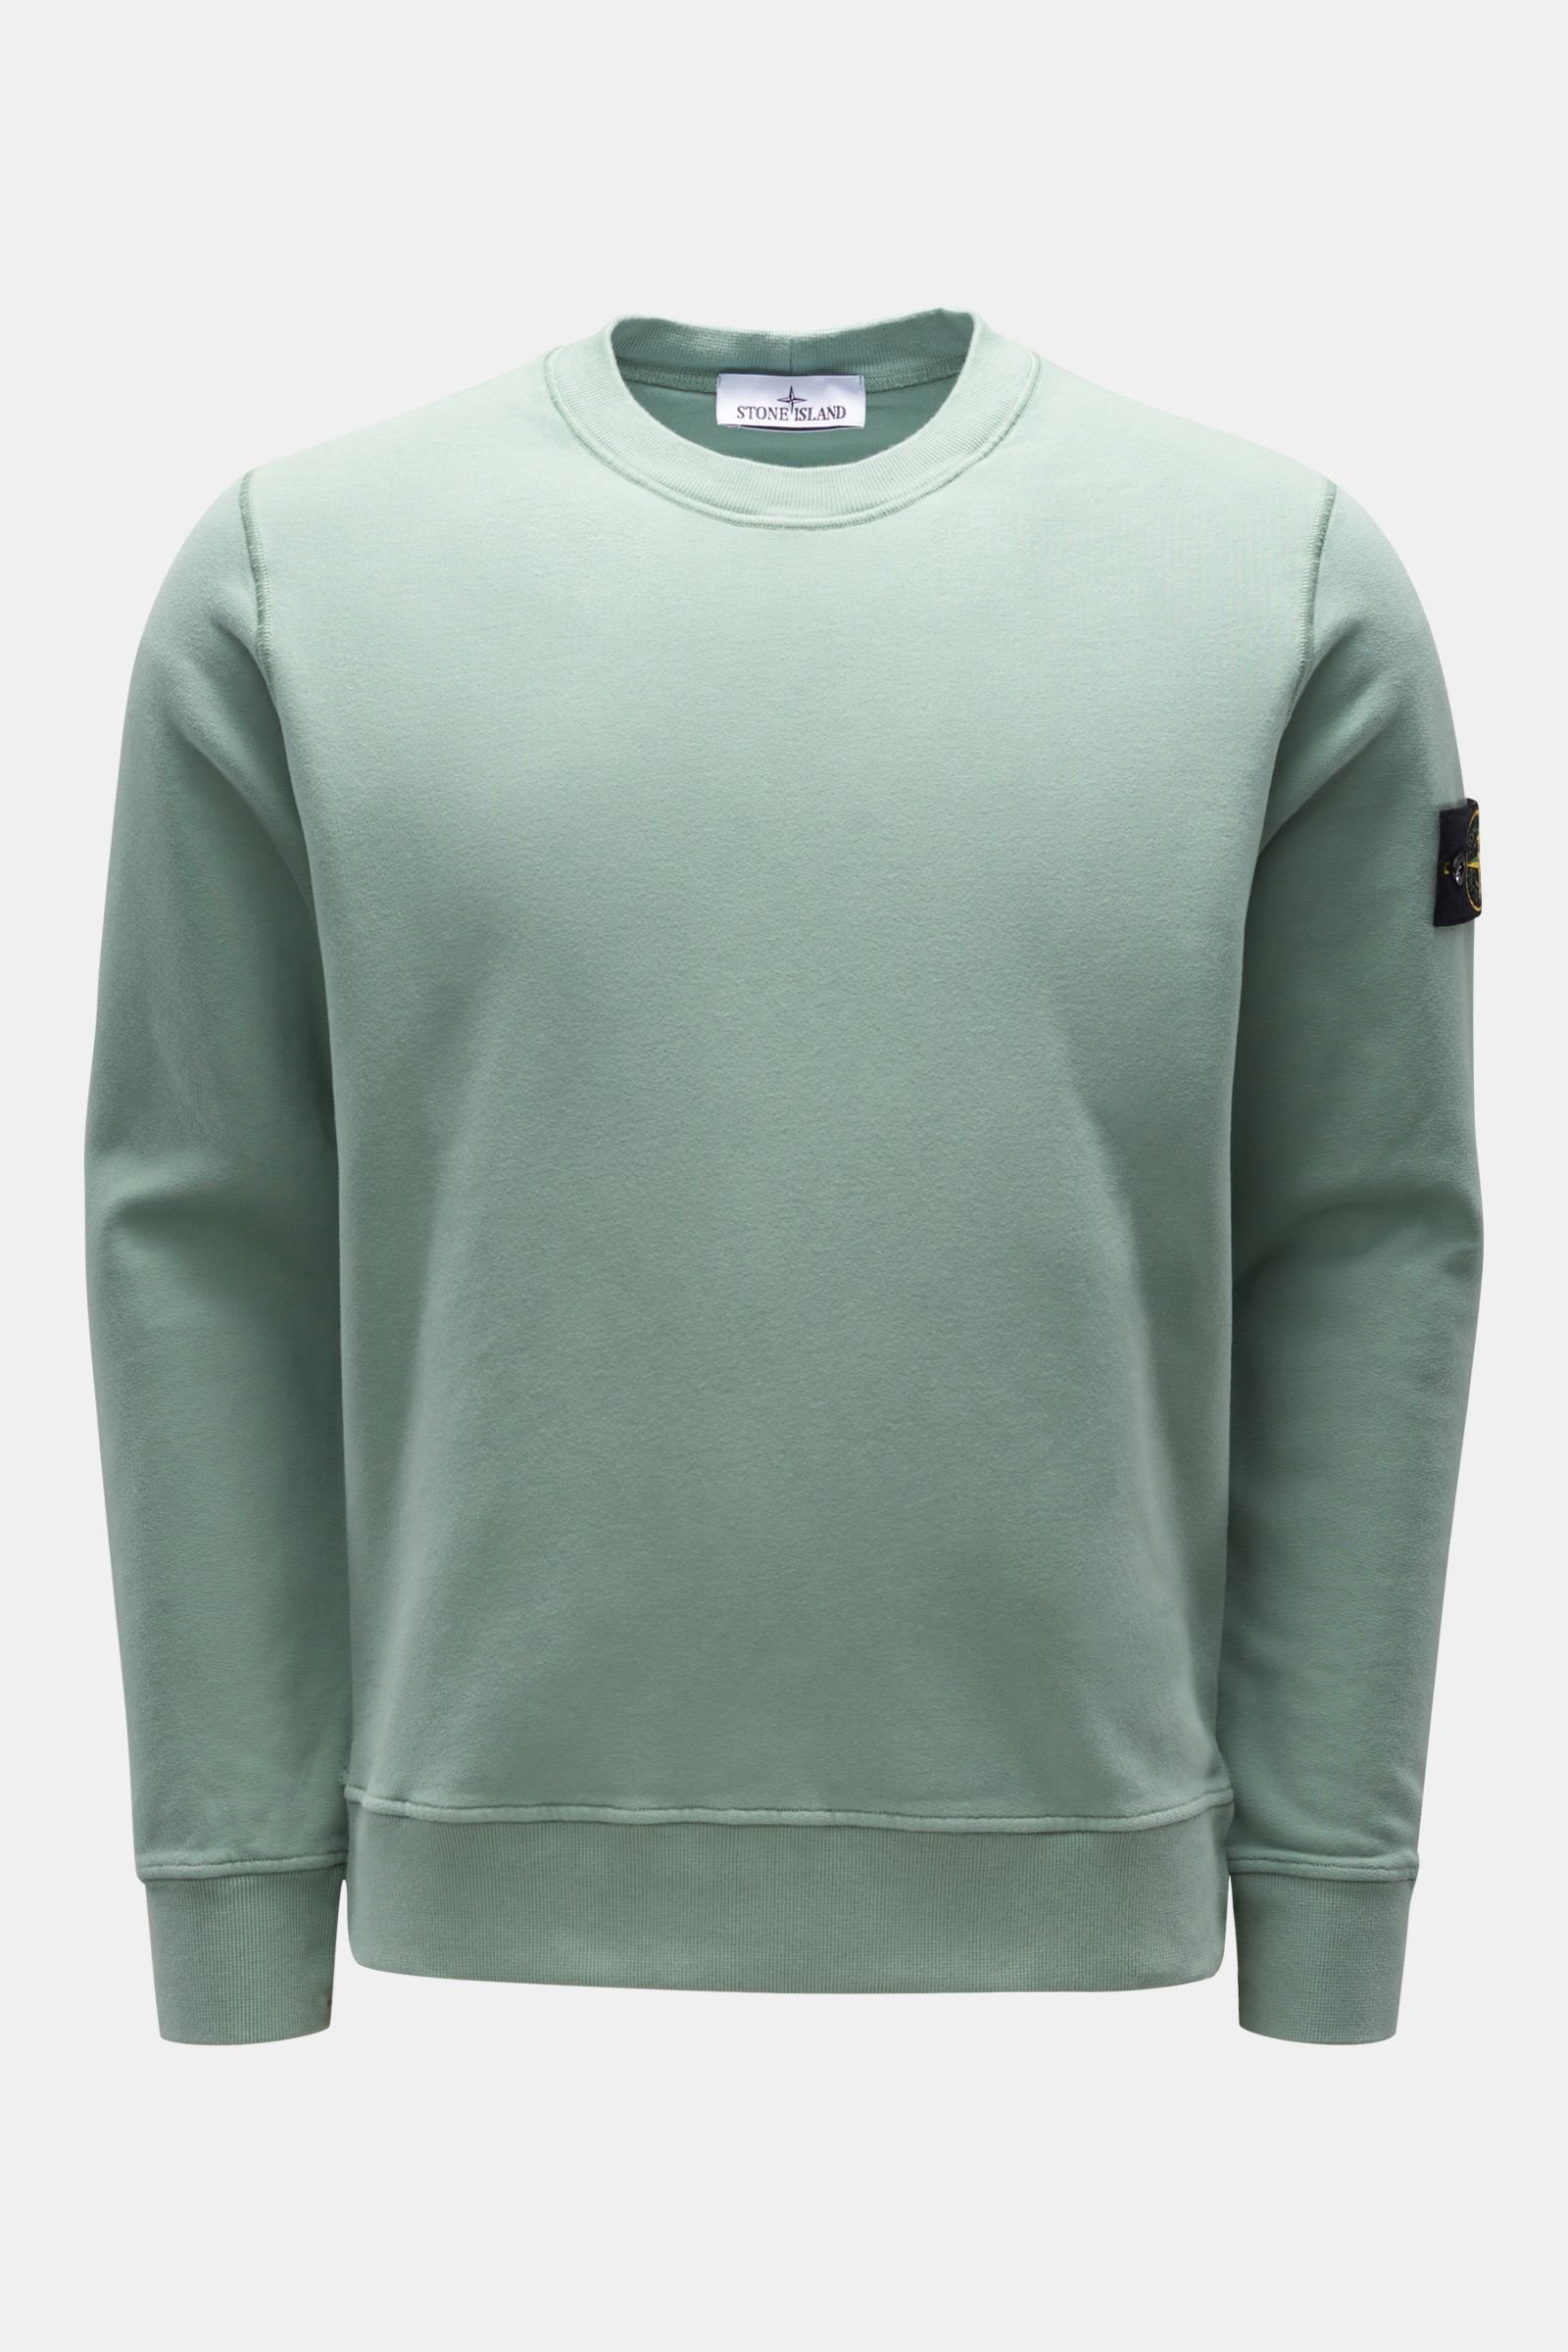 Rundhals-Sweatshirt mintgrün